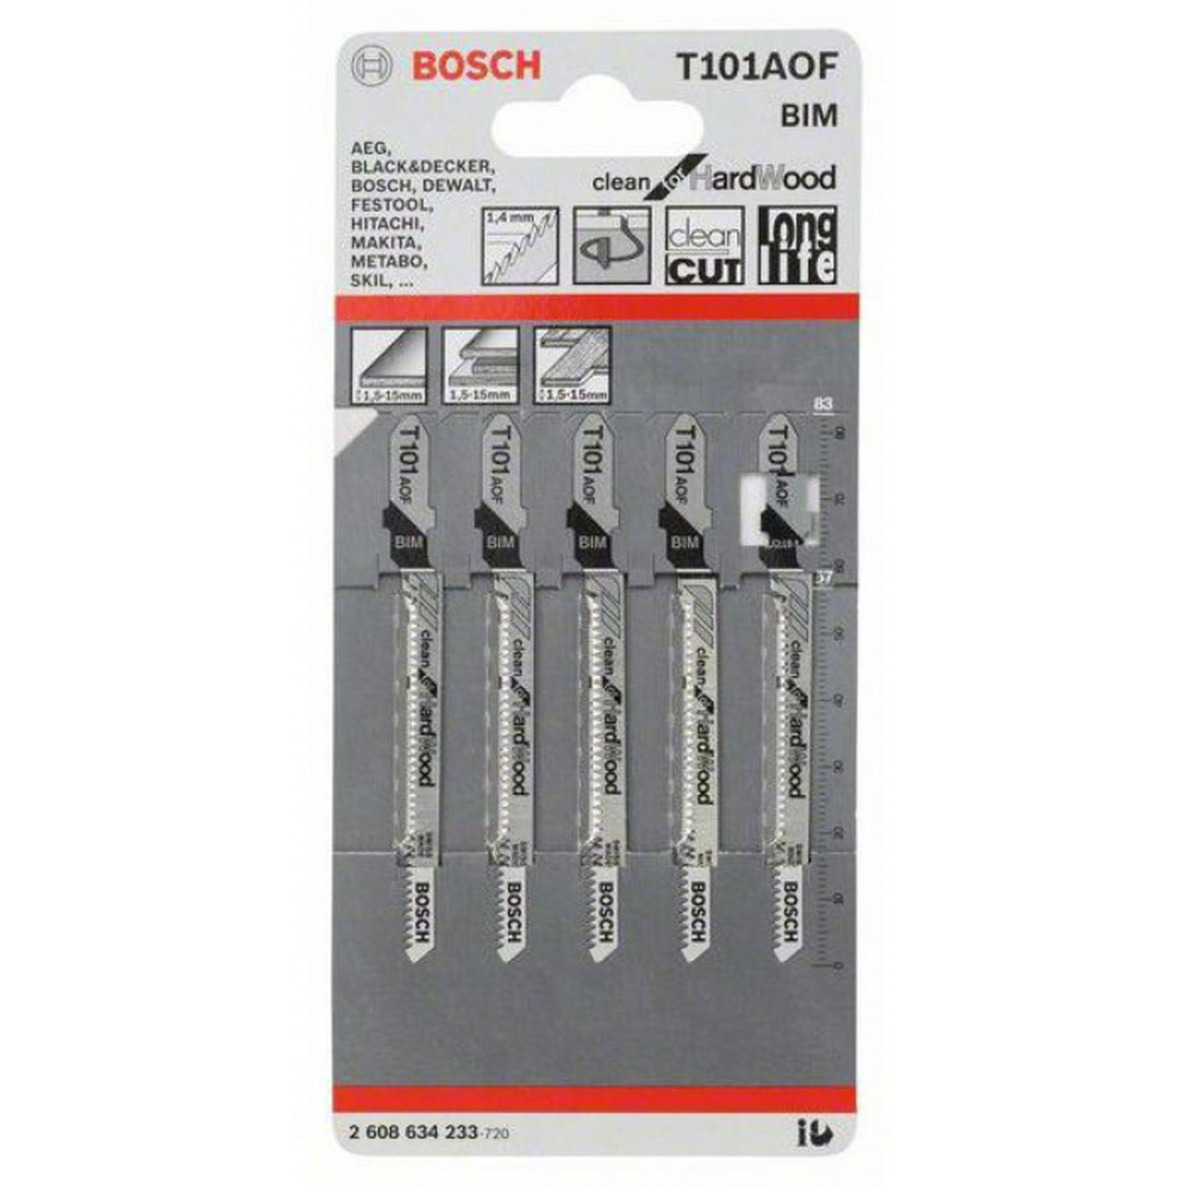 Пилки для лобзика Bosch T101AOF BIM  5шт  2608634233